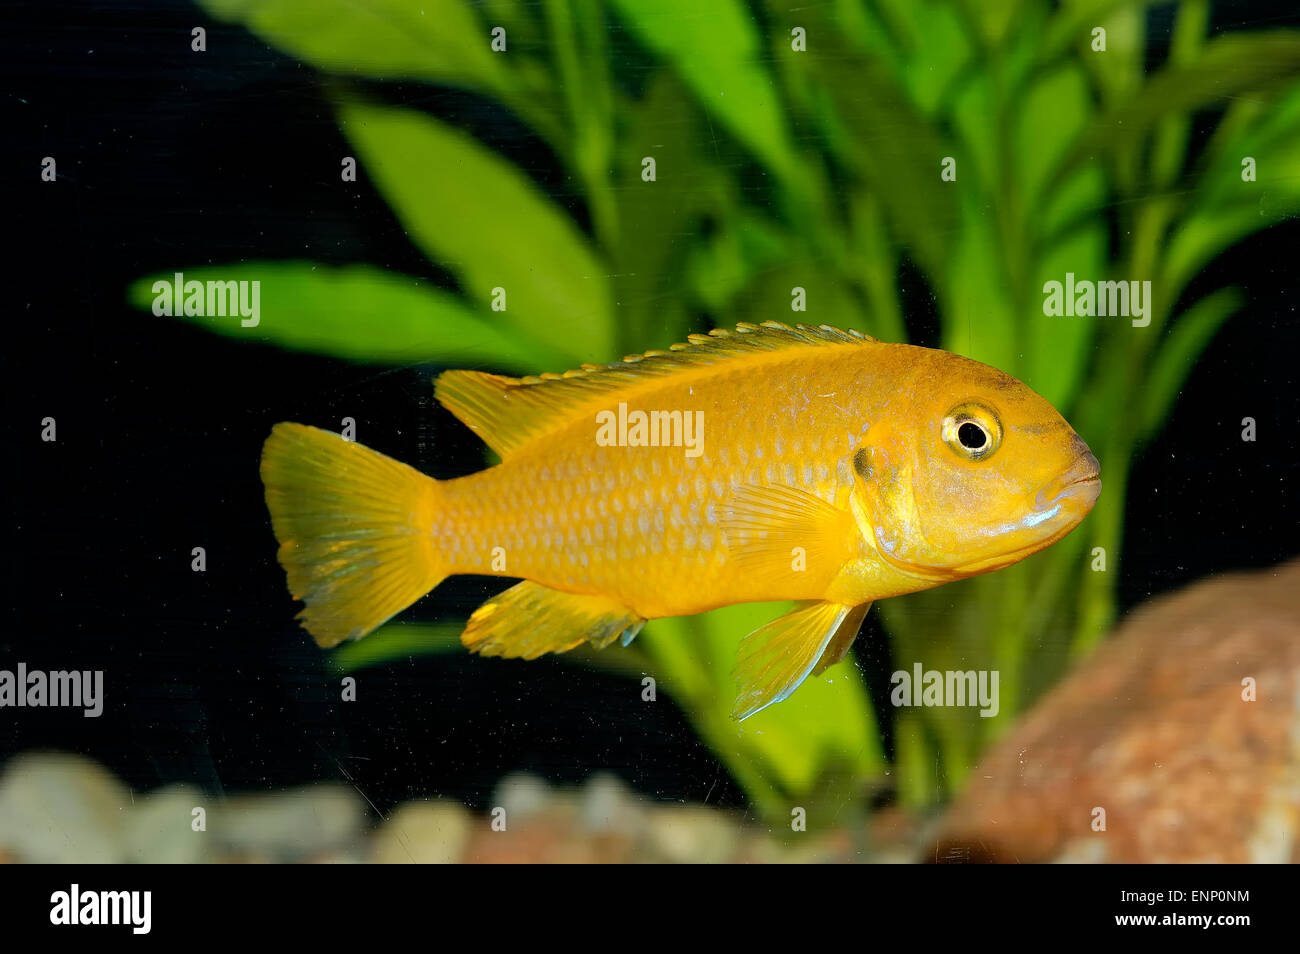 Nice aquarium fish from genus Pseudotropheus. Stock Photo